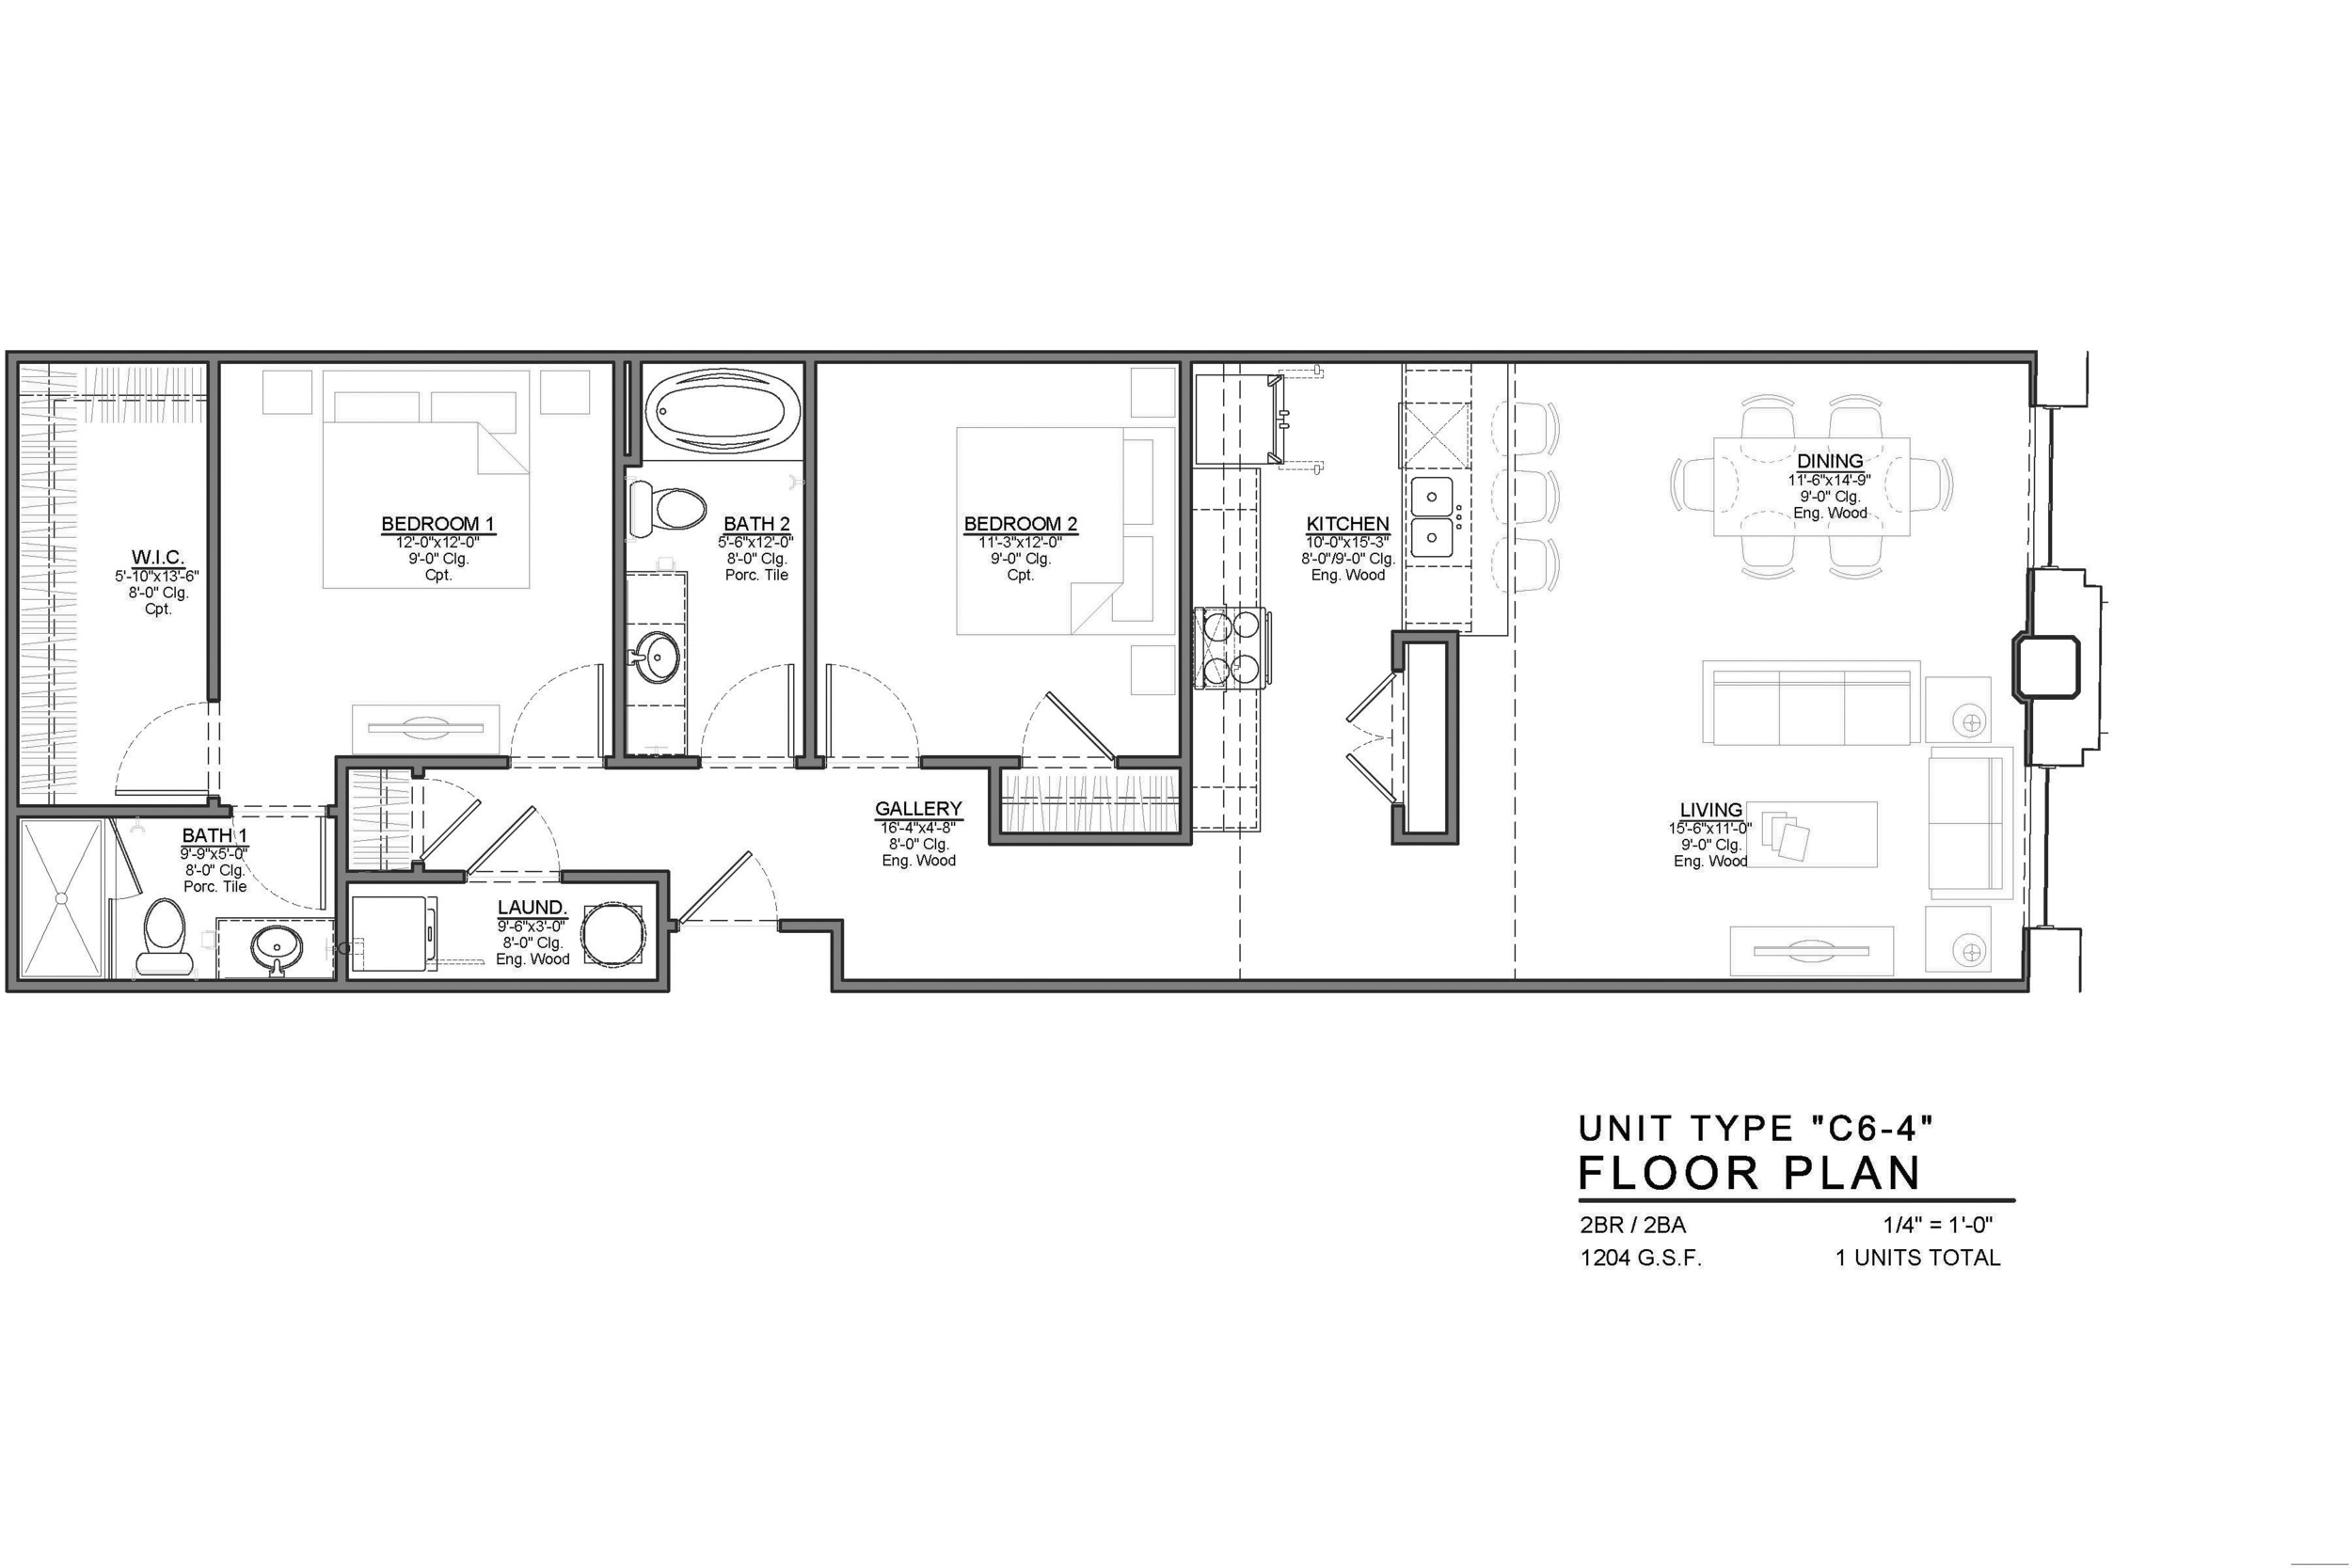 C6-4 FLOOR PLAN: 2 BEDROOM / 2 BATH